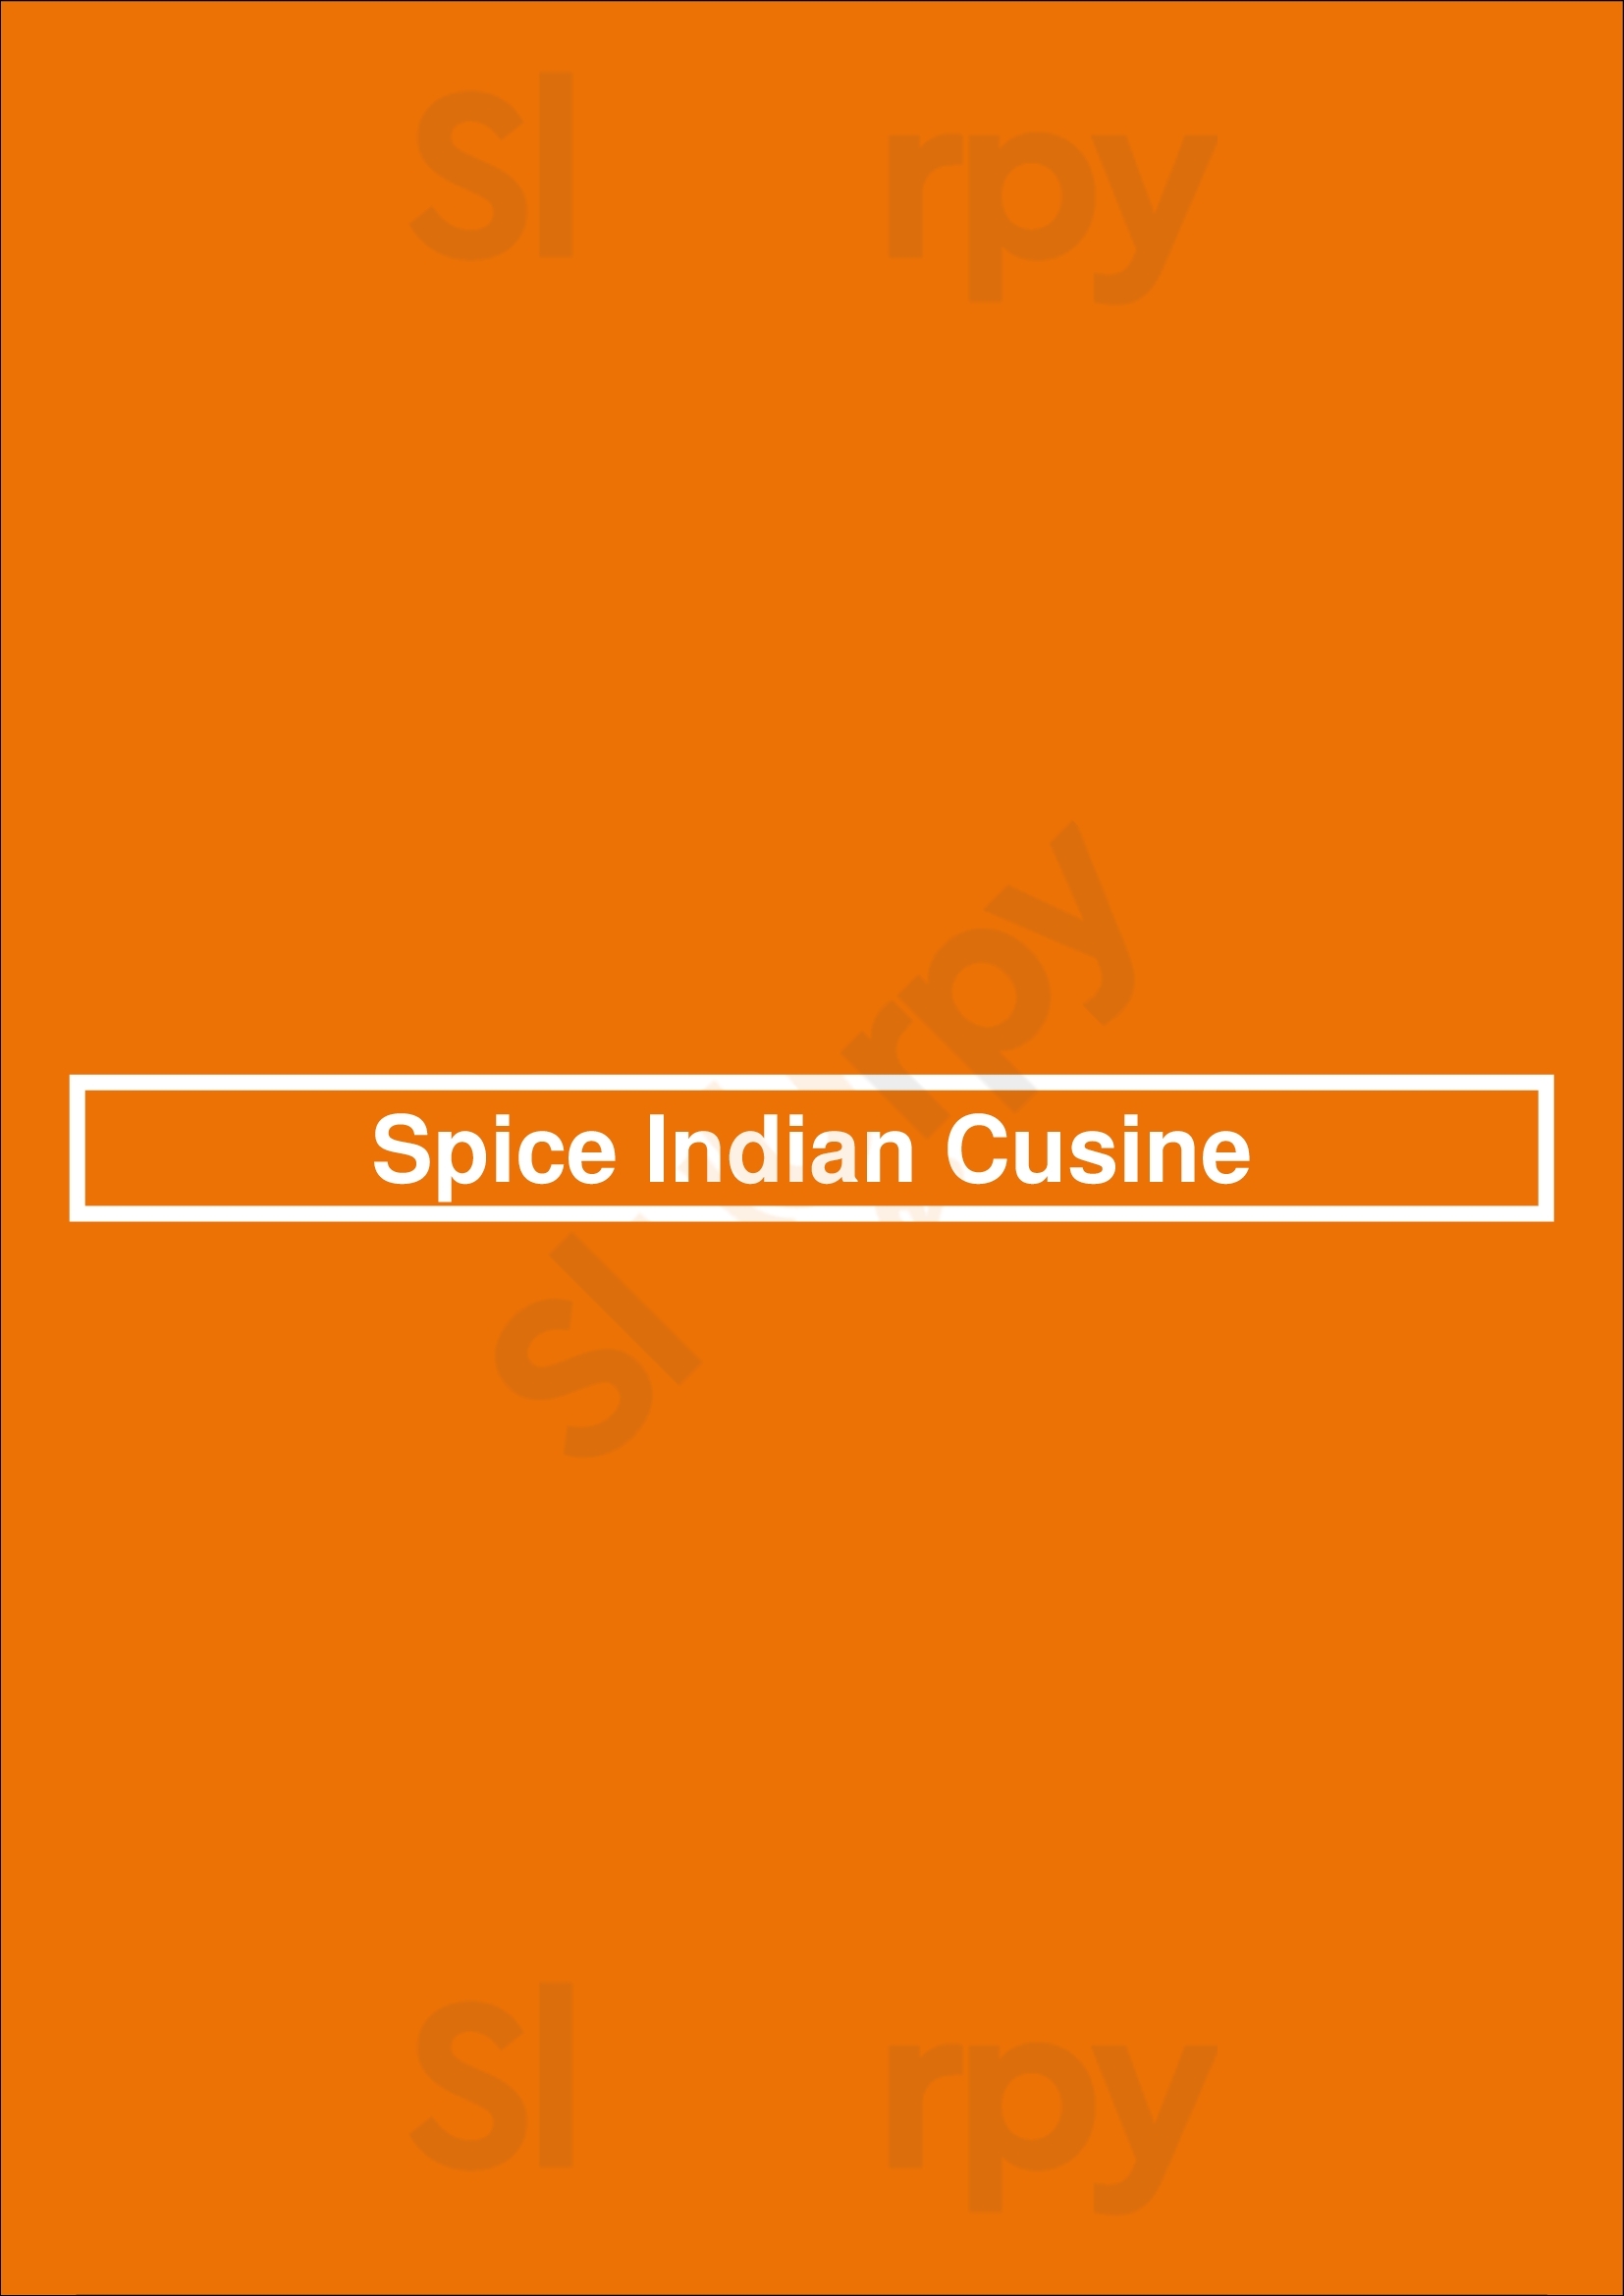 Spice Indian Cusine East Kilbride Menu - 1